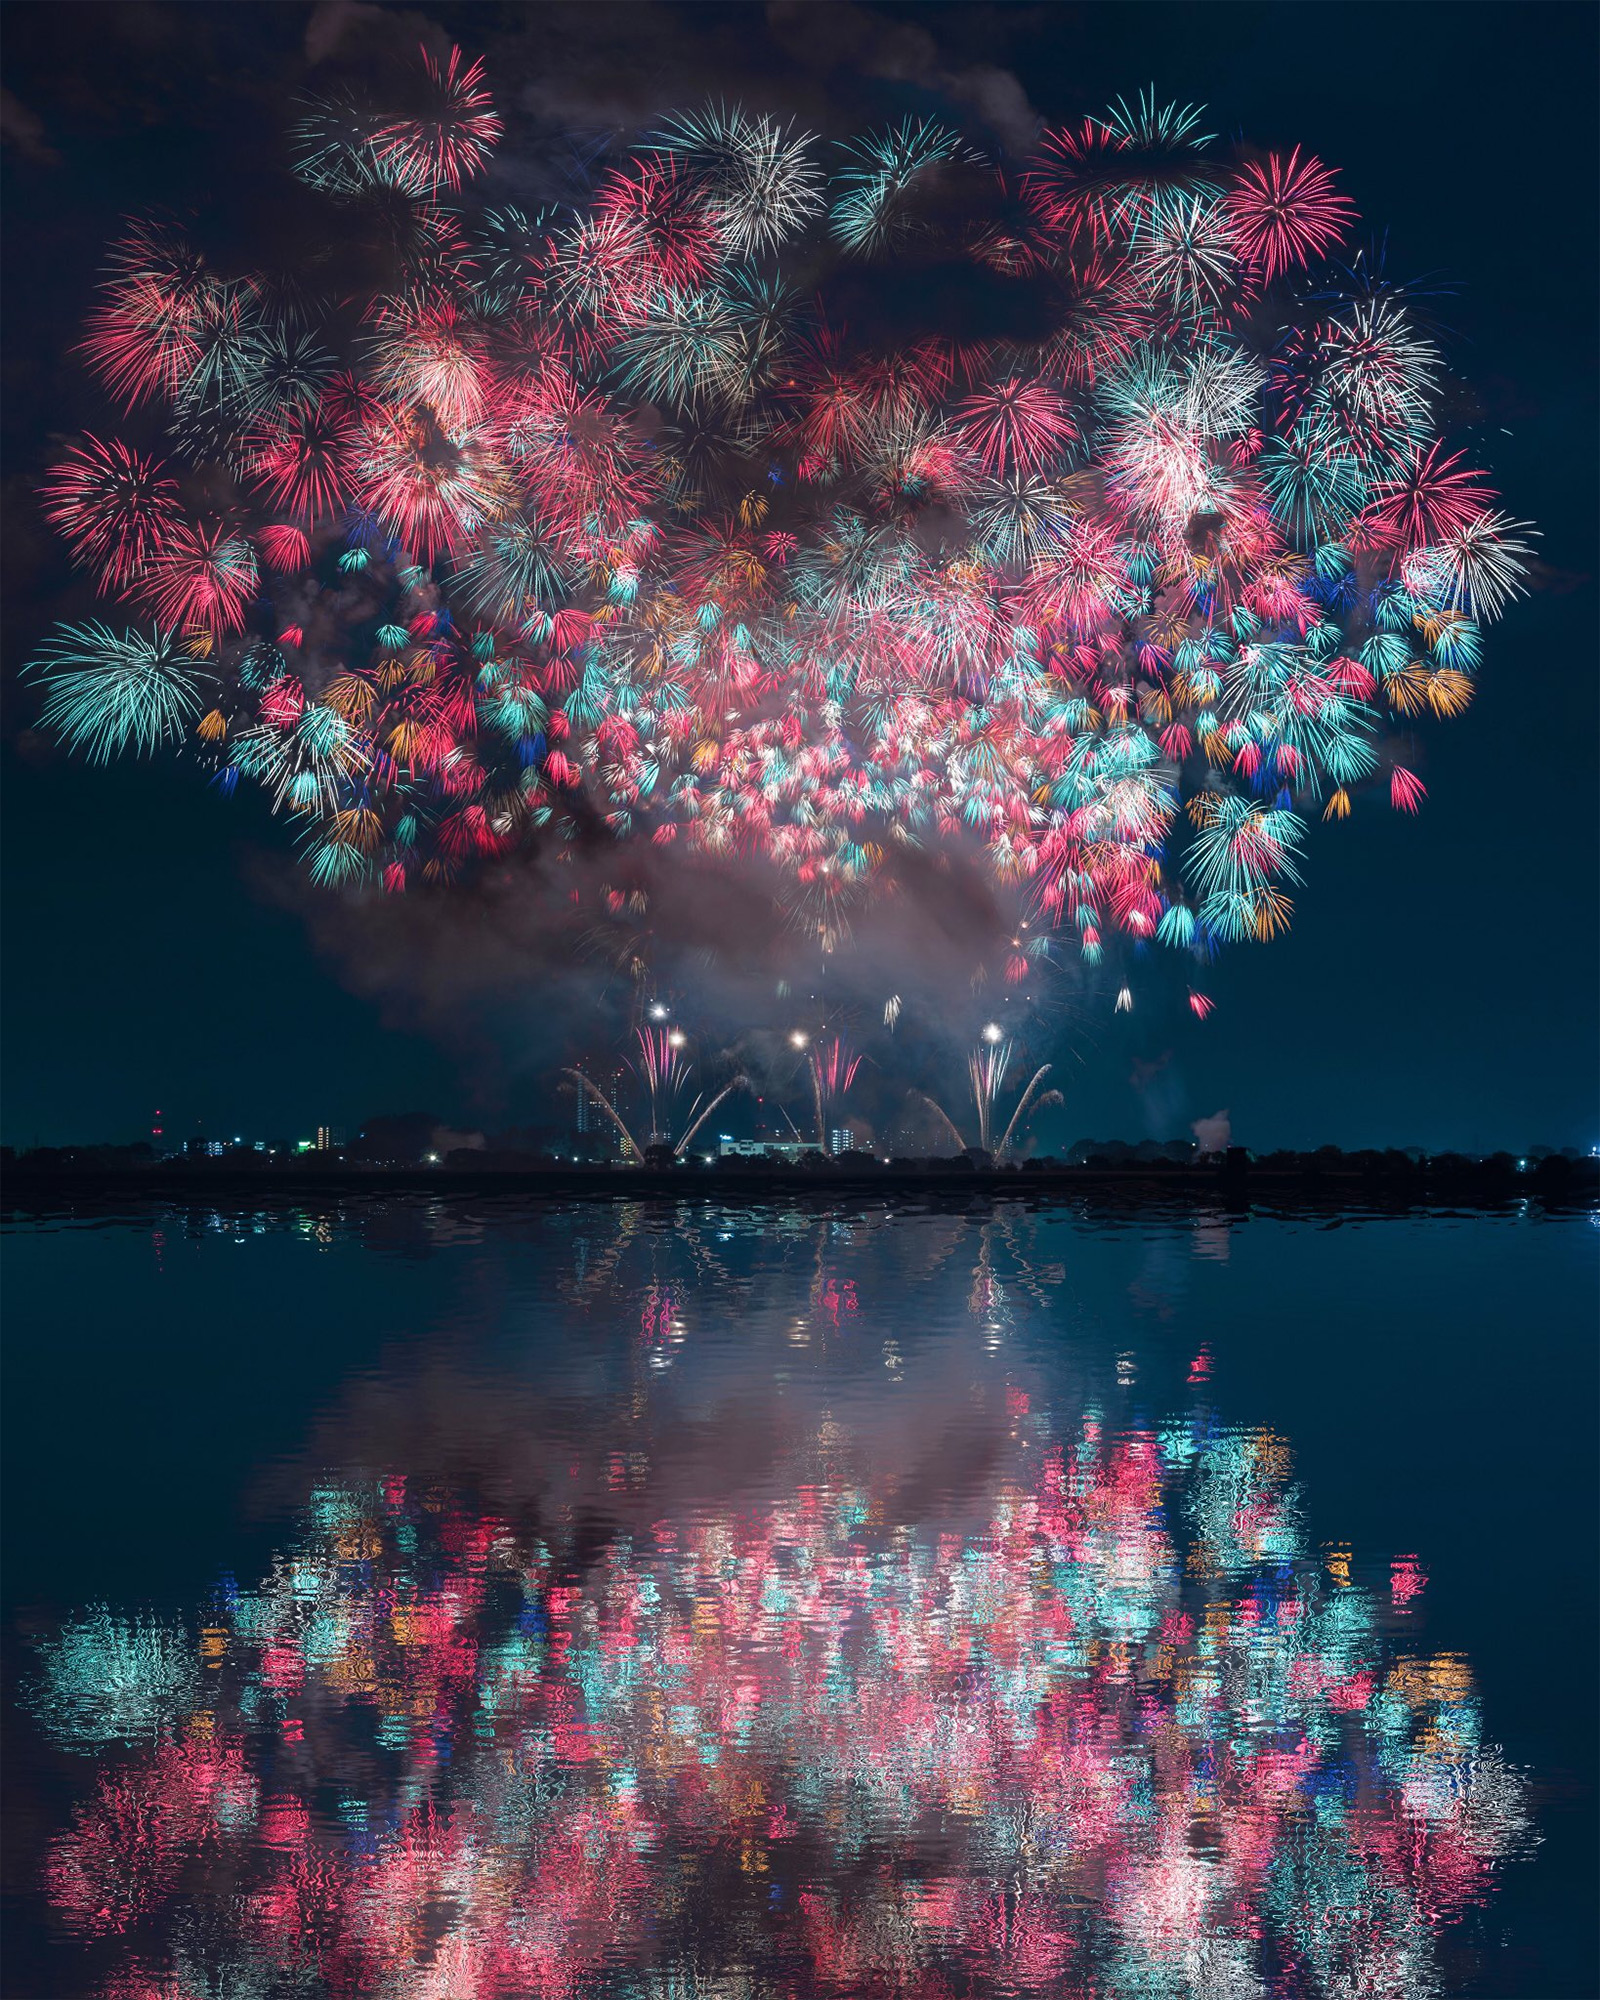 content_fubiz-keisuke-fireworks-photography-01